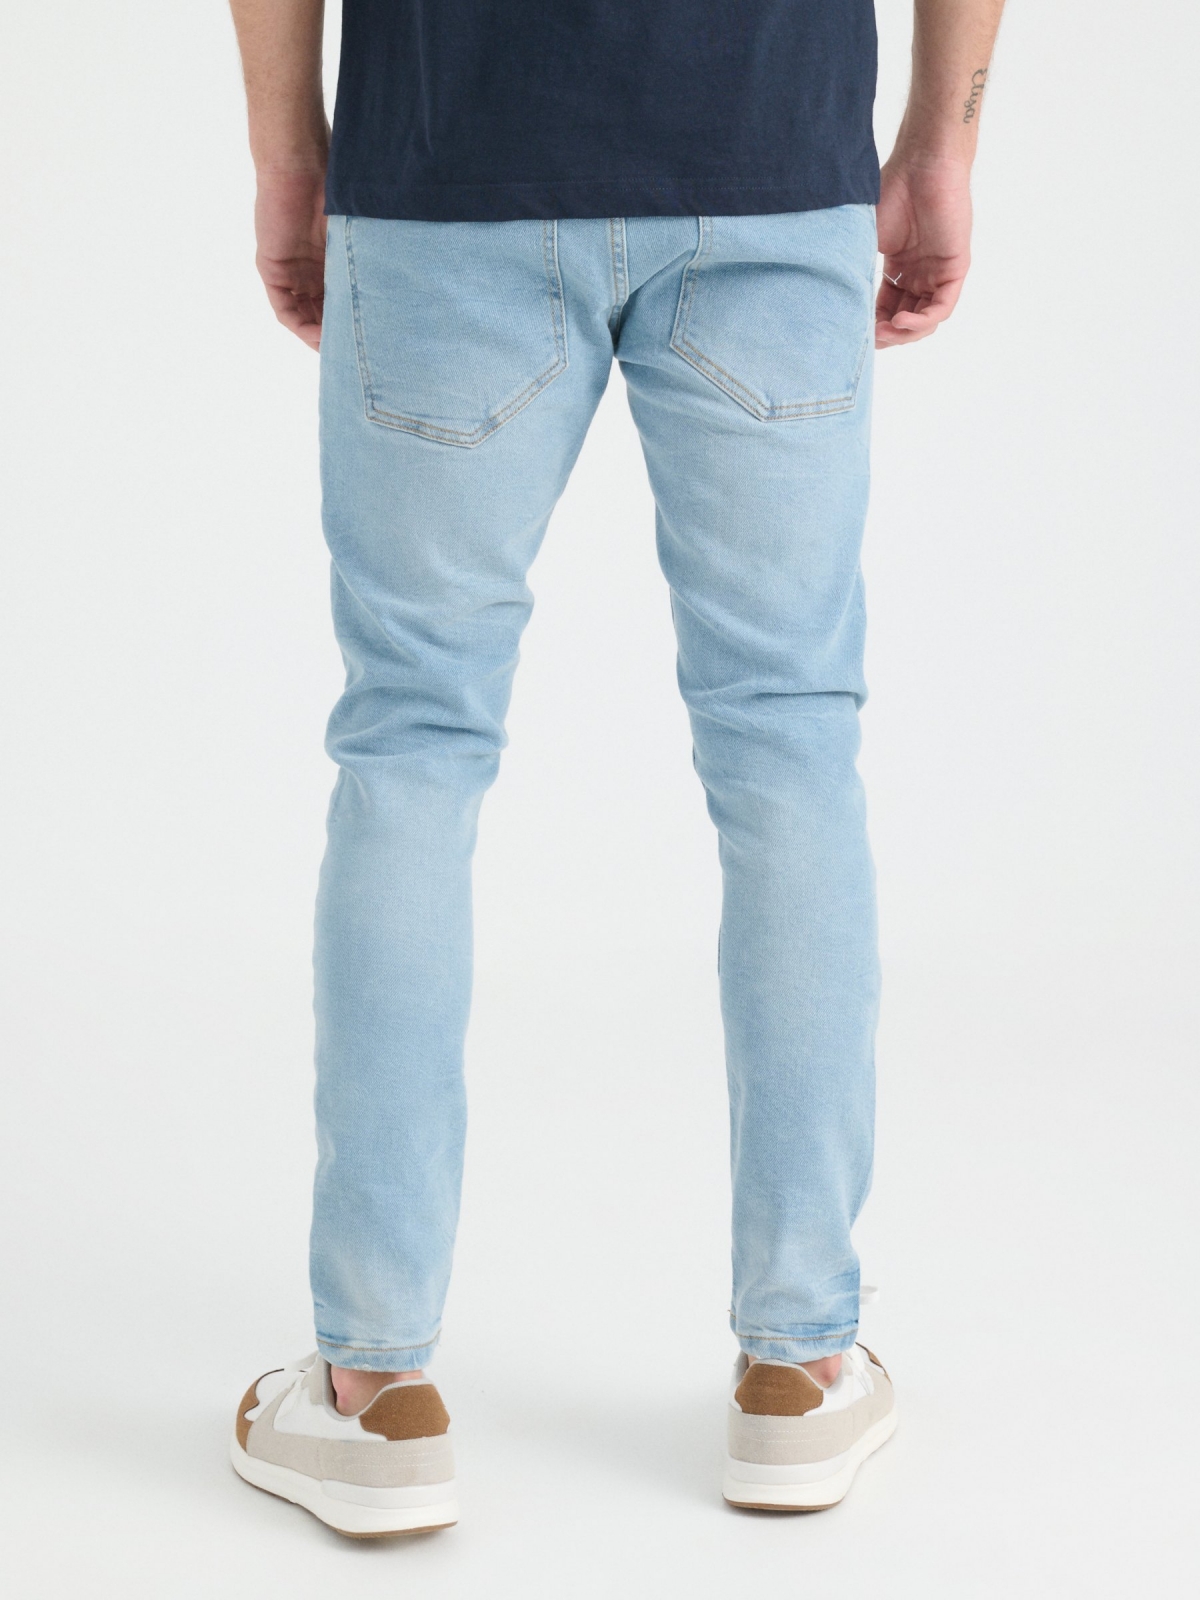 Jeans super slim lavado e rasgado azul claro vista meia traseira